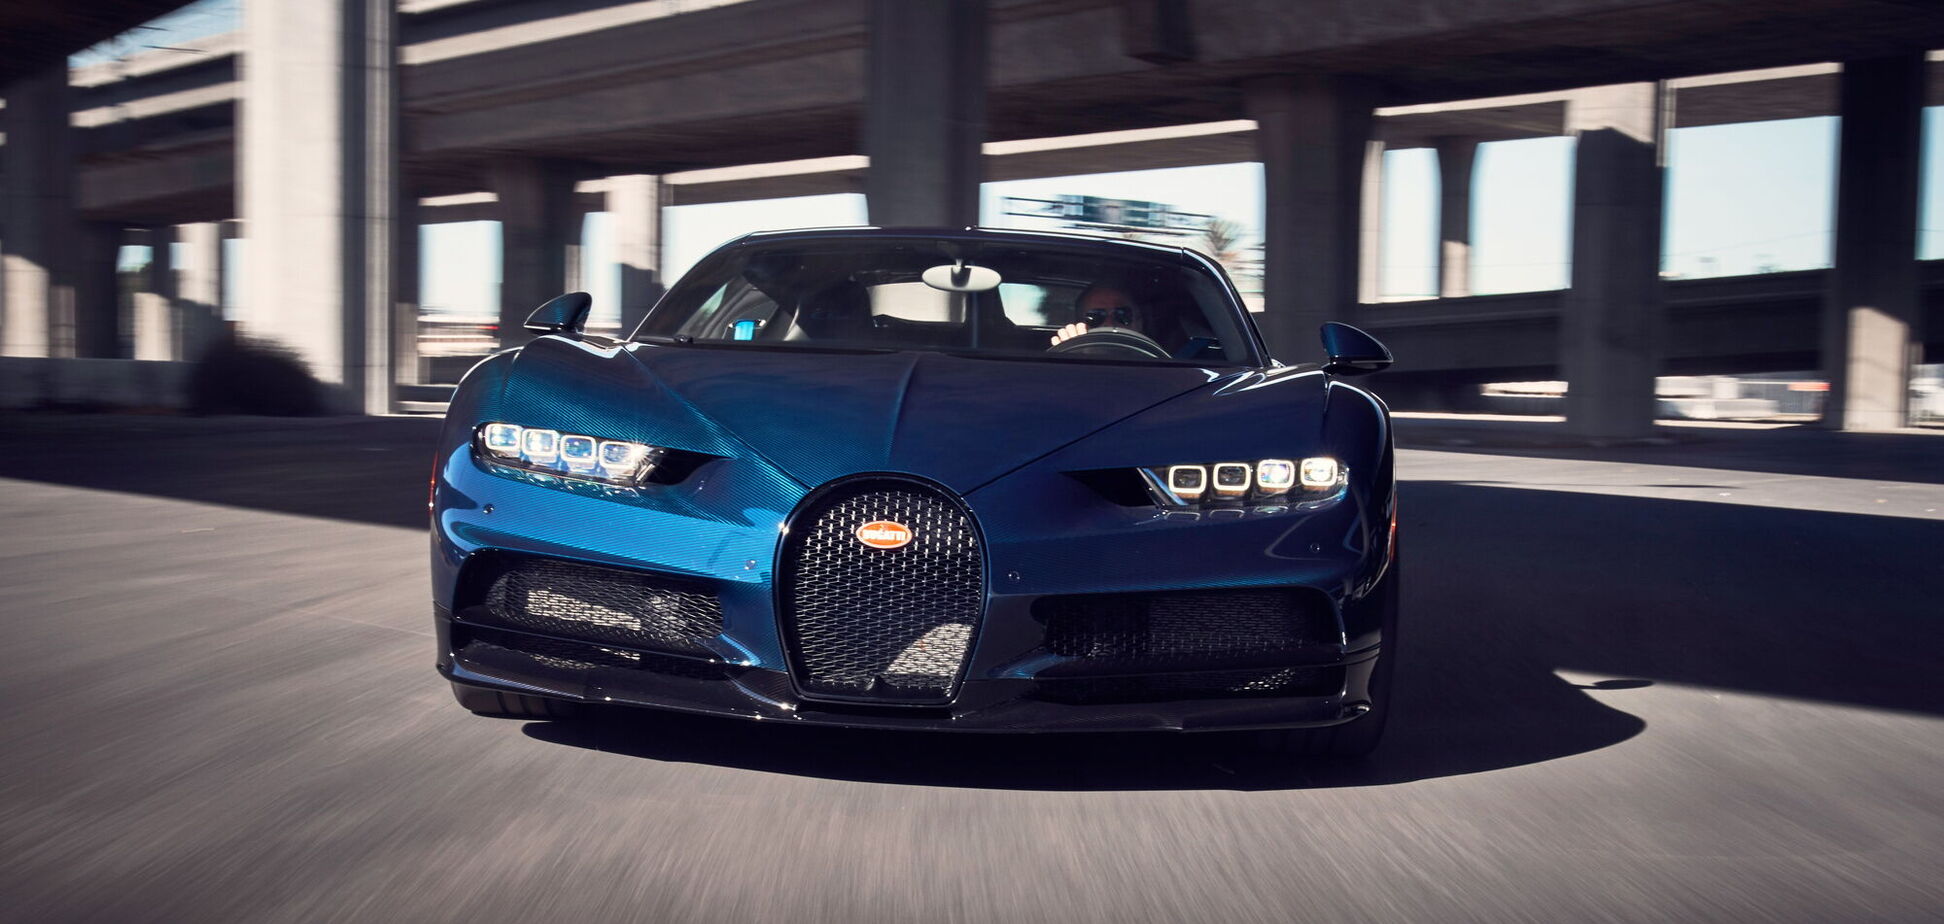 Владелец Bugatti подвергся критике Министерства транспорта Германии